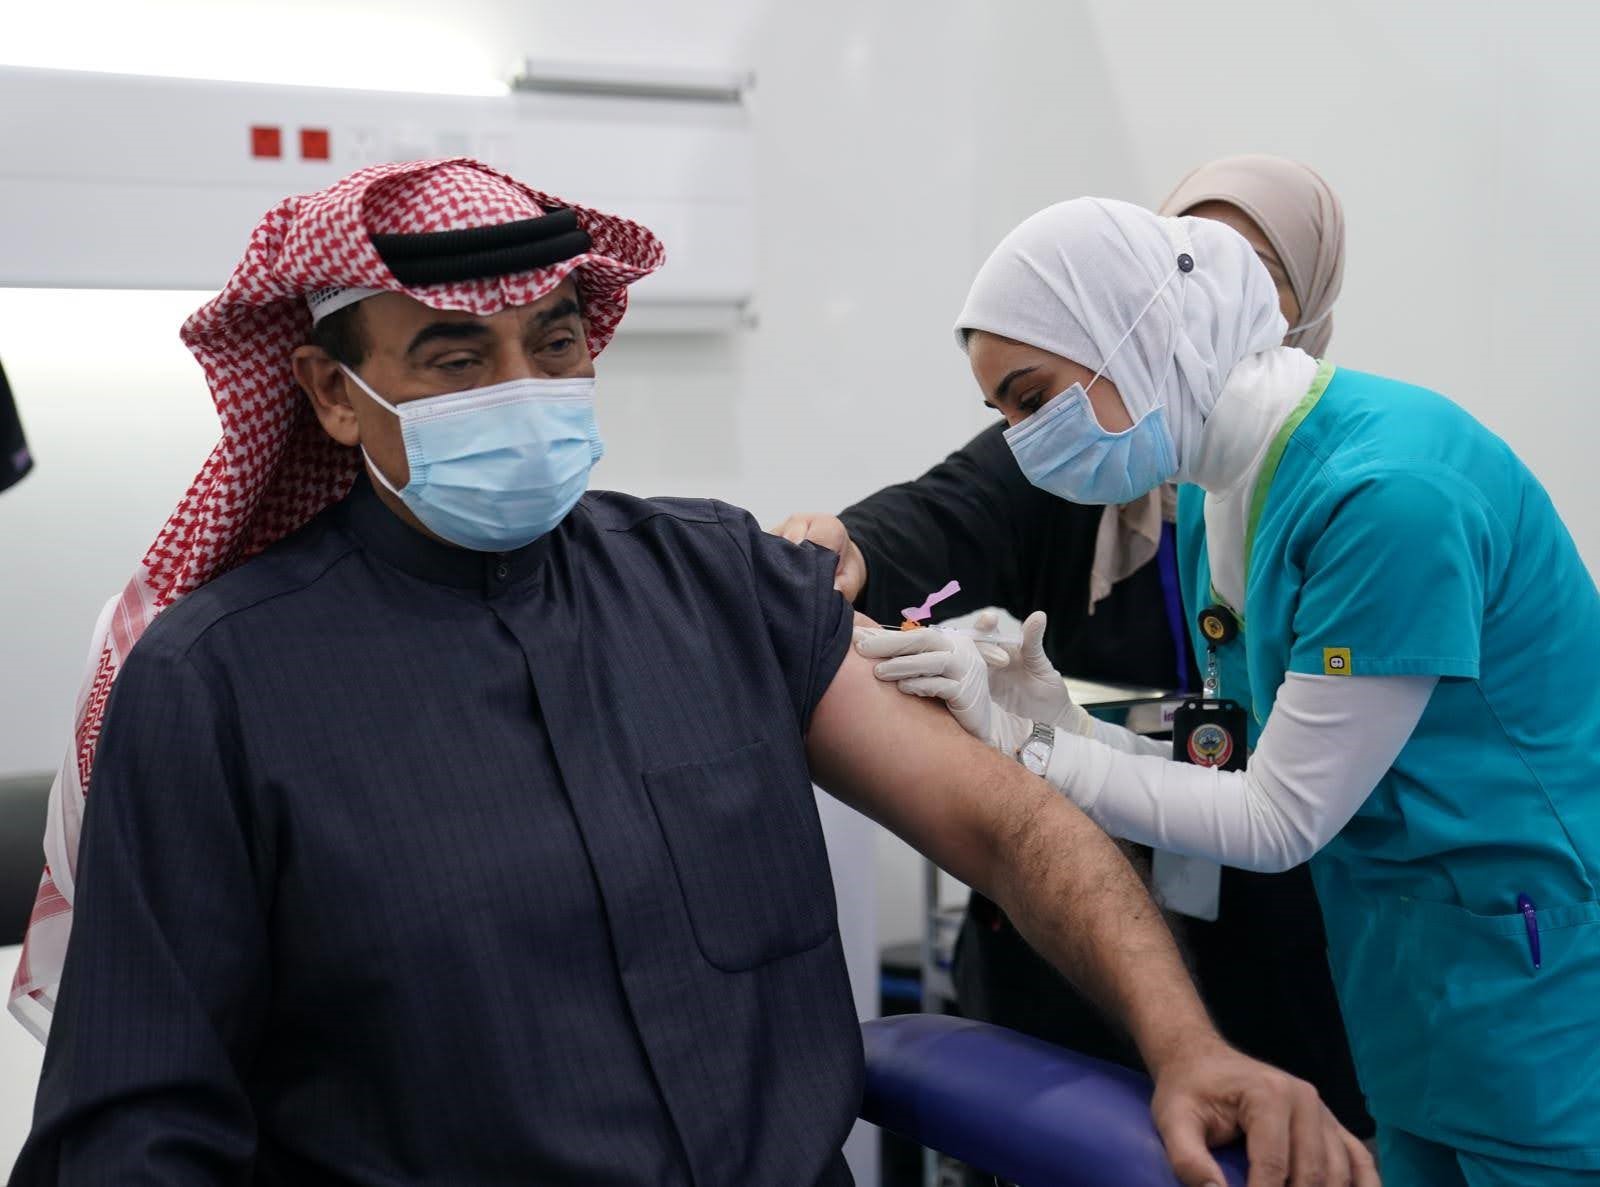 سمو رئيس مجلس الوزراء يتلقى الجرعة الأولى للقاح